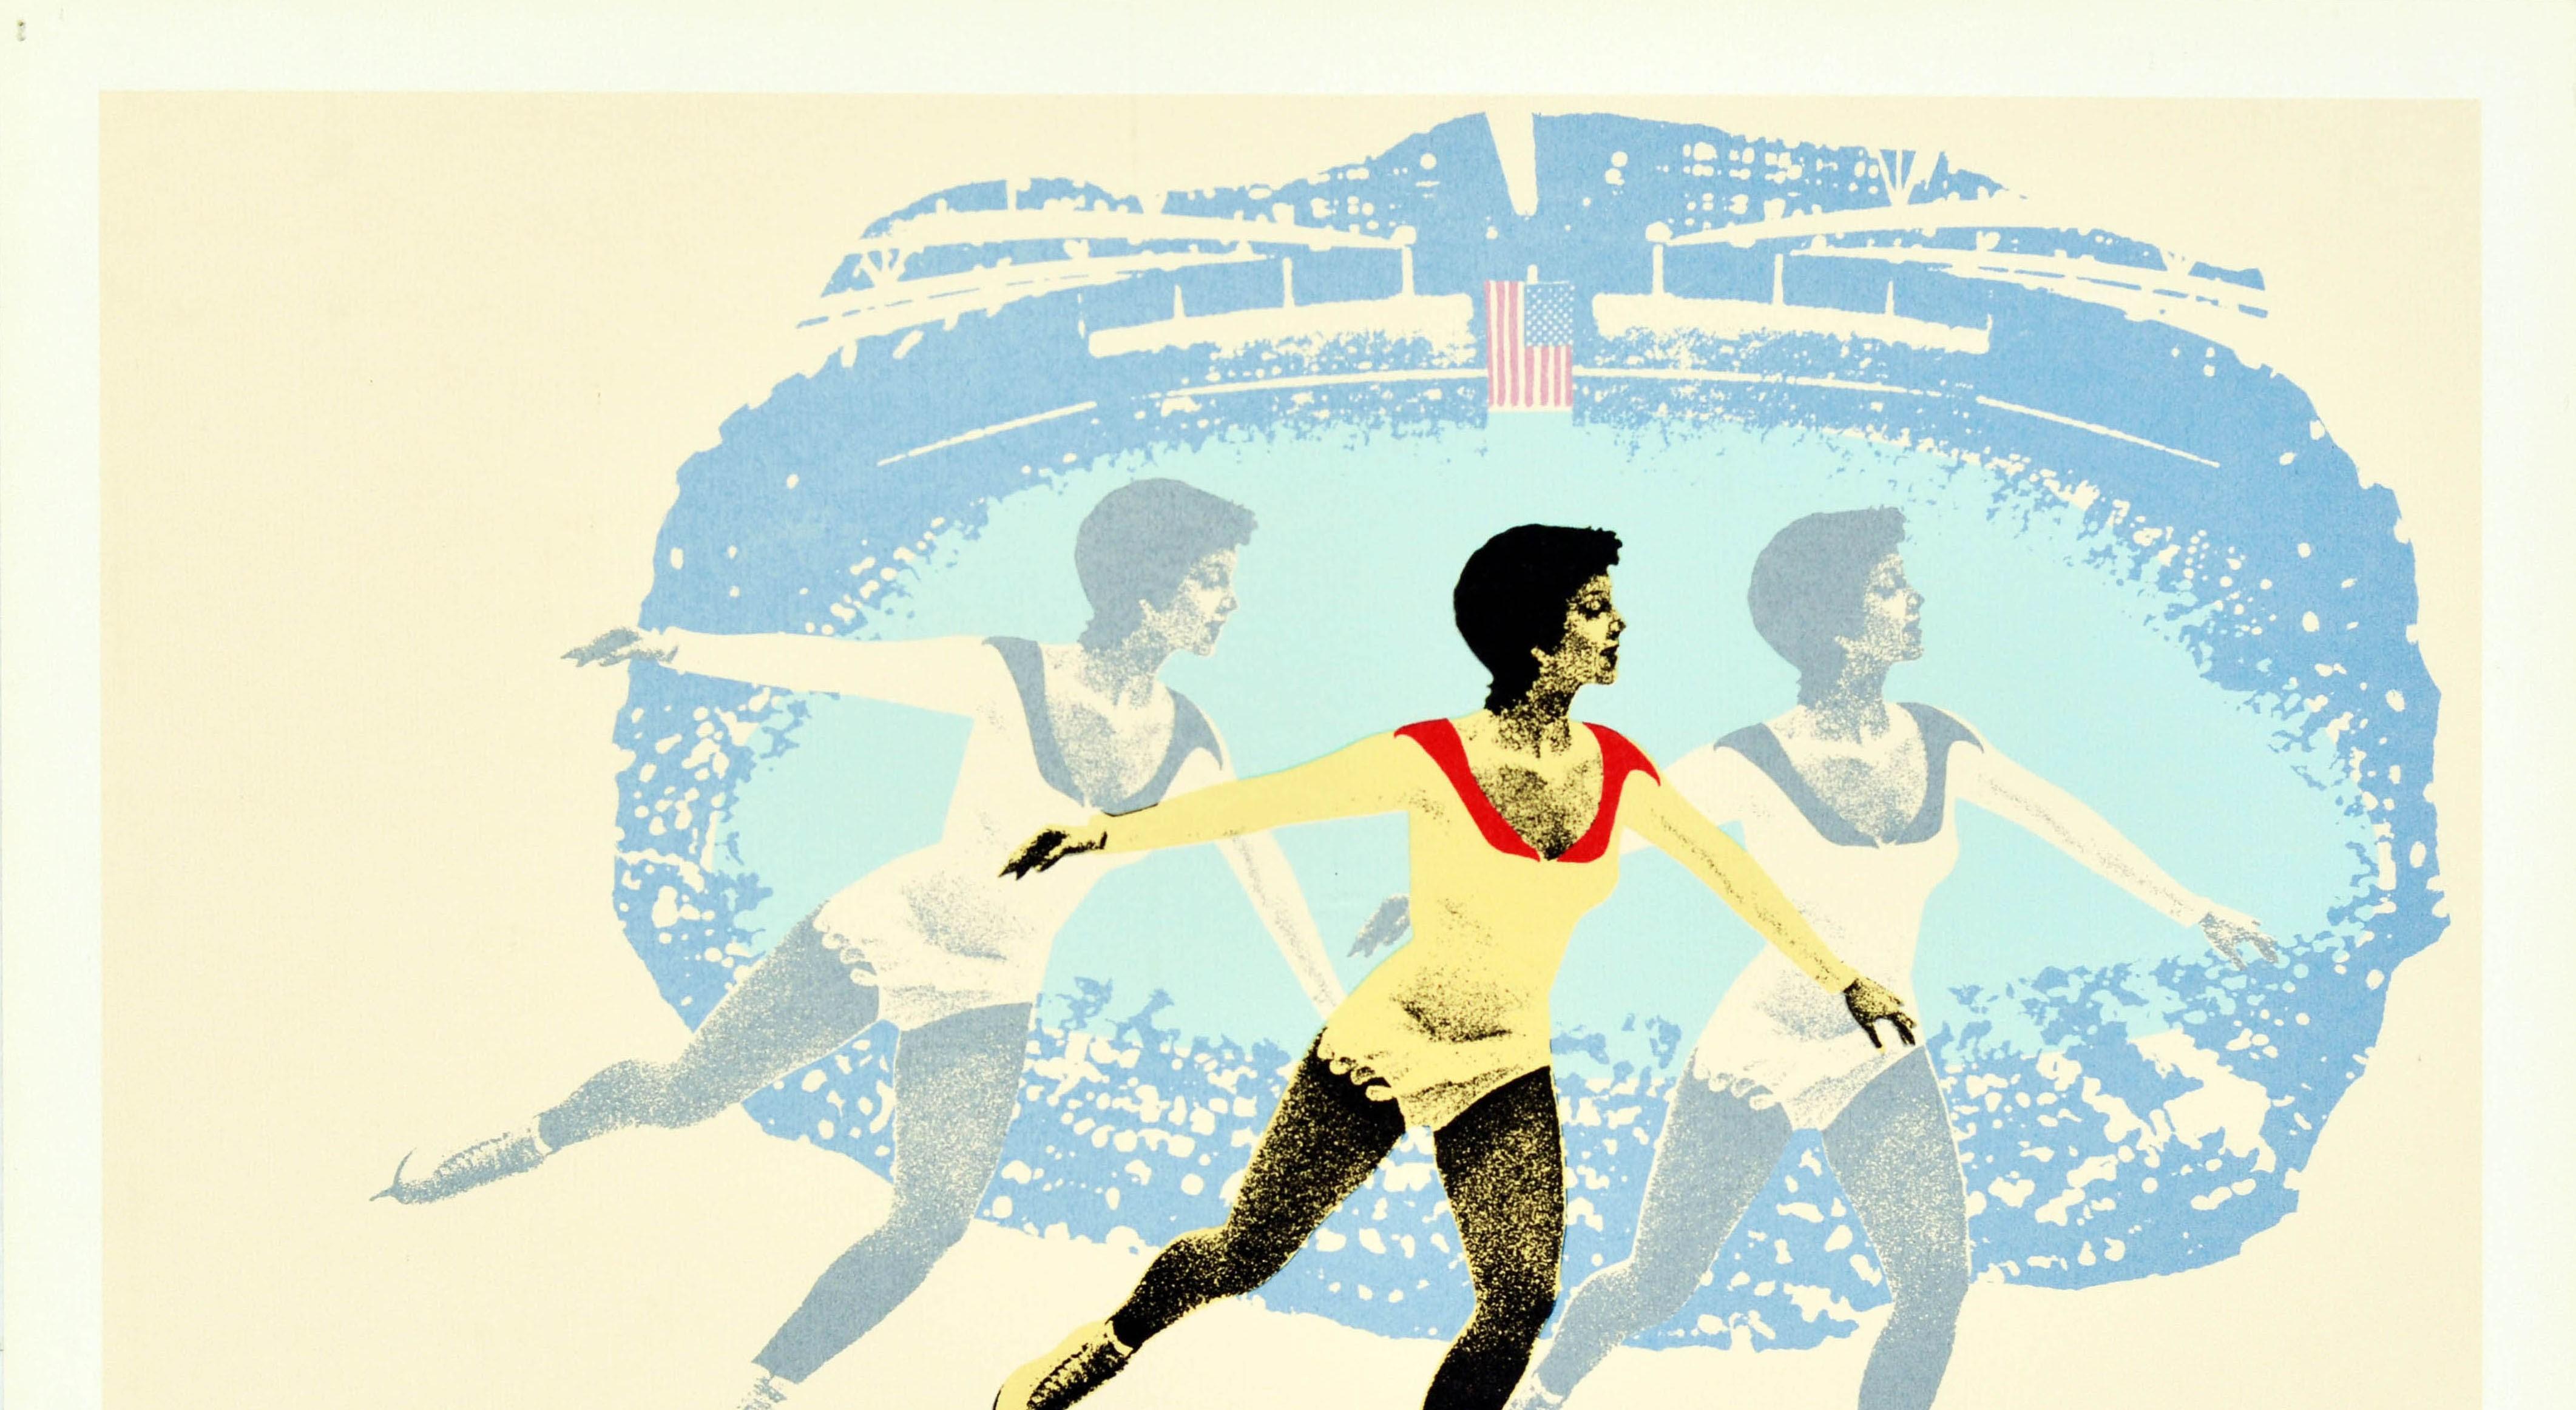 Affiche rétro originale des Jeux olympiques d'hiver de Lake Placid à New York, patineur sur glace - Print de Wheeler